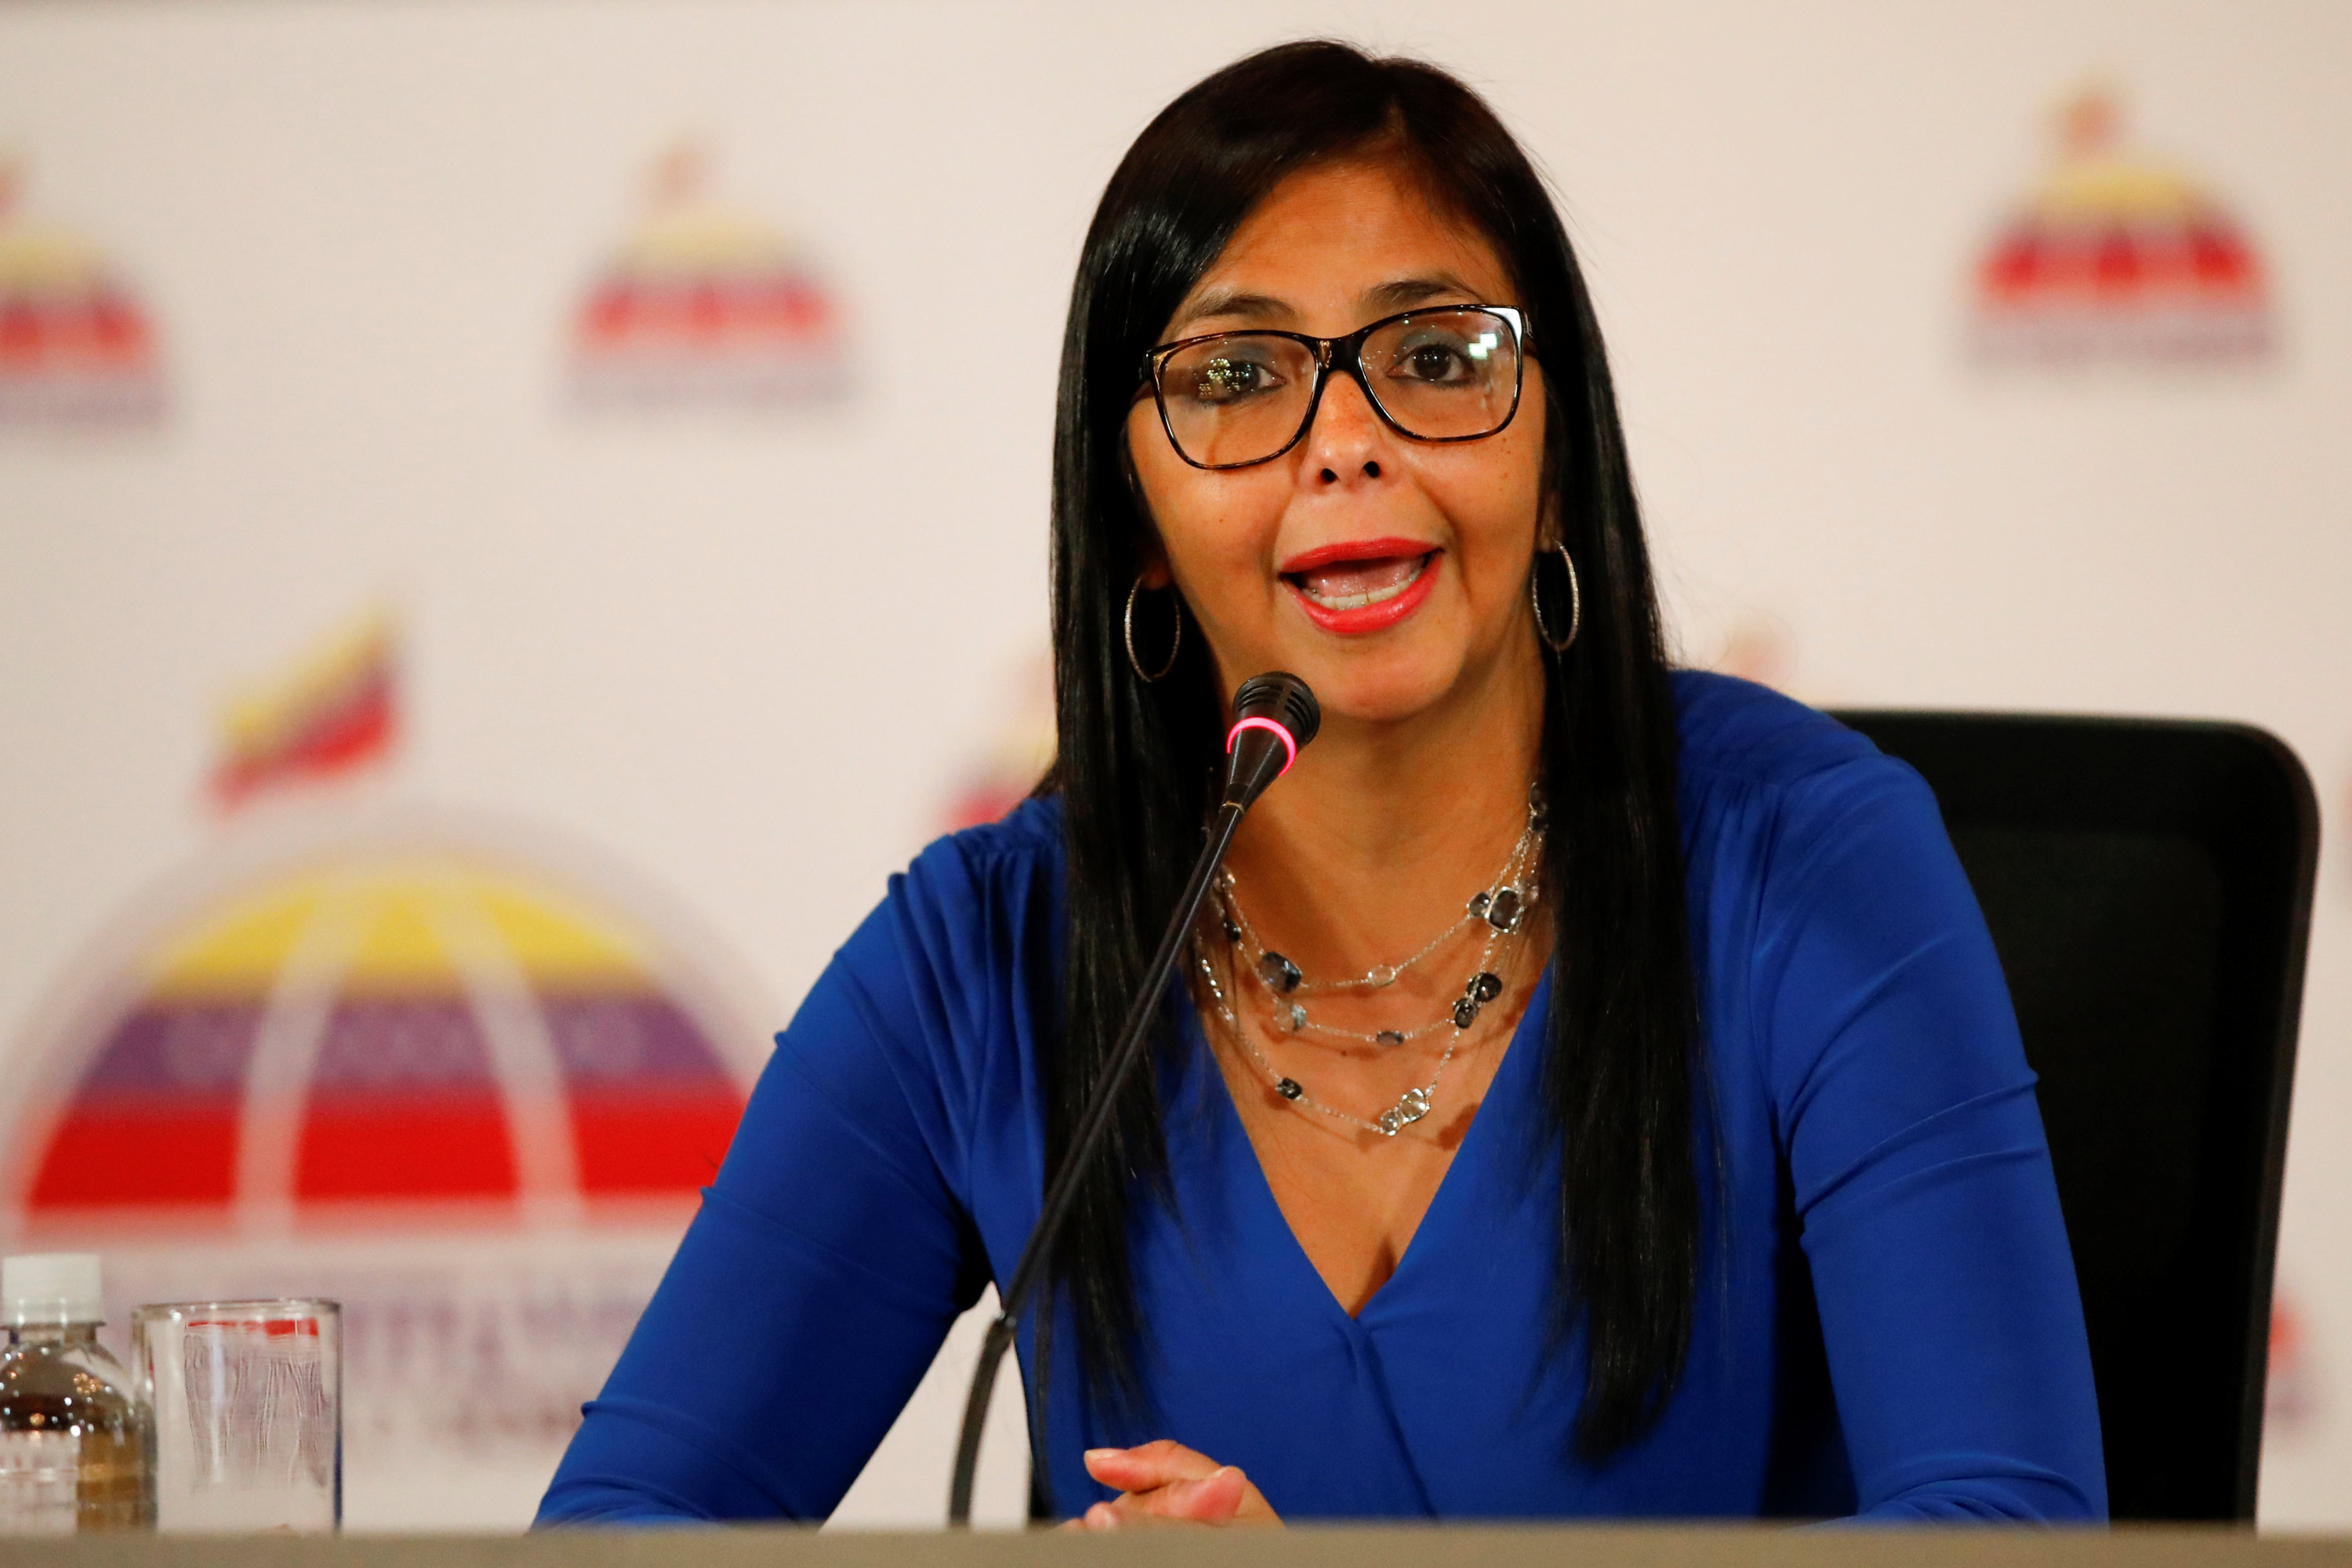 Asamblea Constituyente Venezuela aprueba juicio historico opositores por traicion